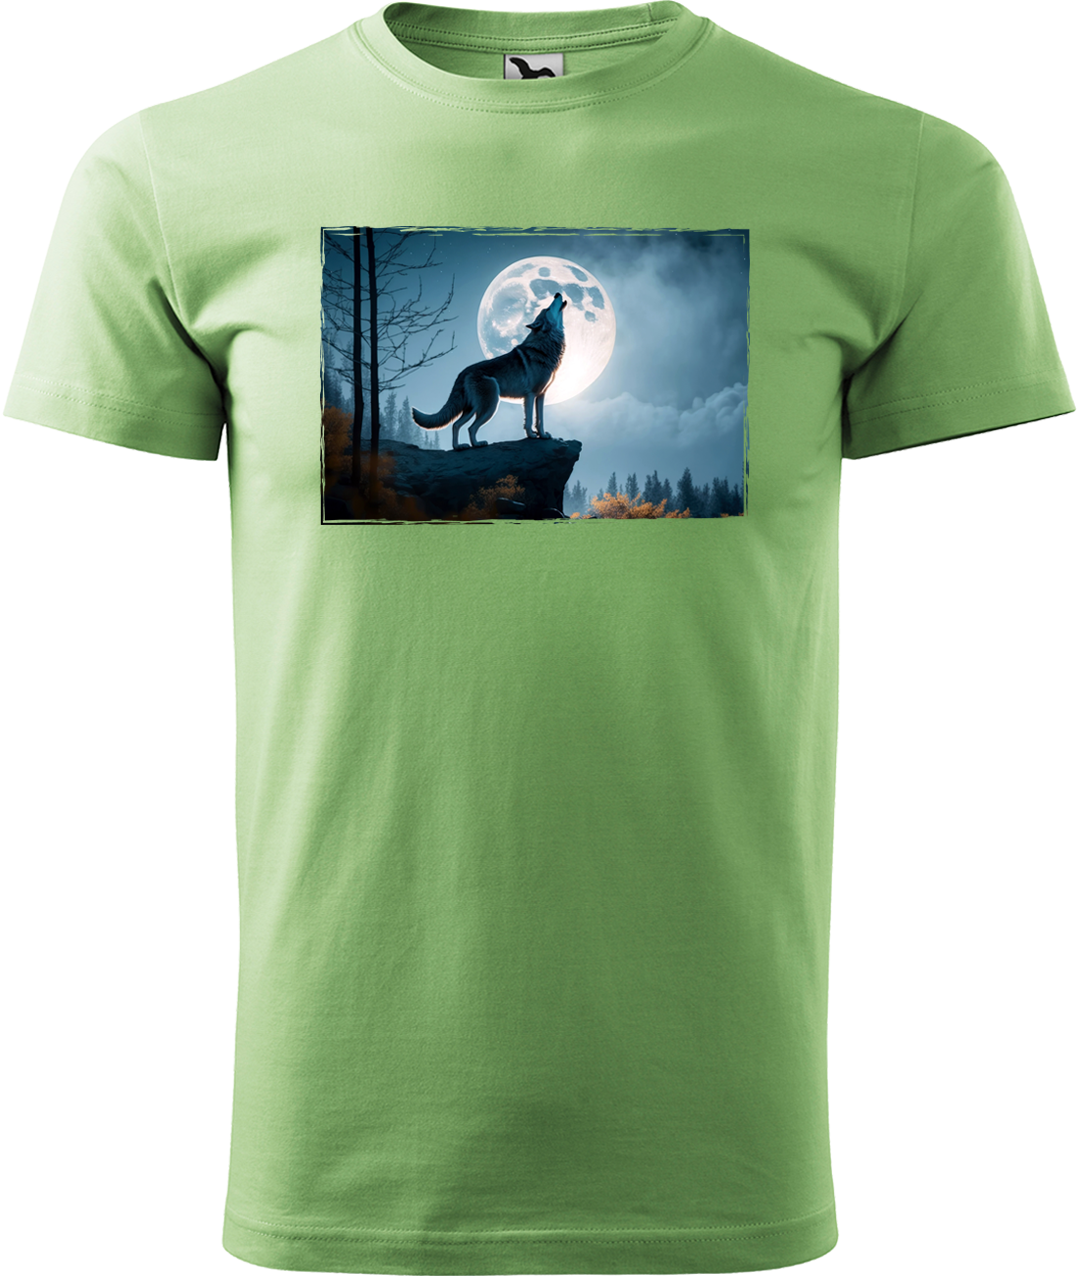 Pánské tričko s vlkem - Vyjící vlk Velikost: XL, Barva: Trávově zelená (39)